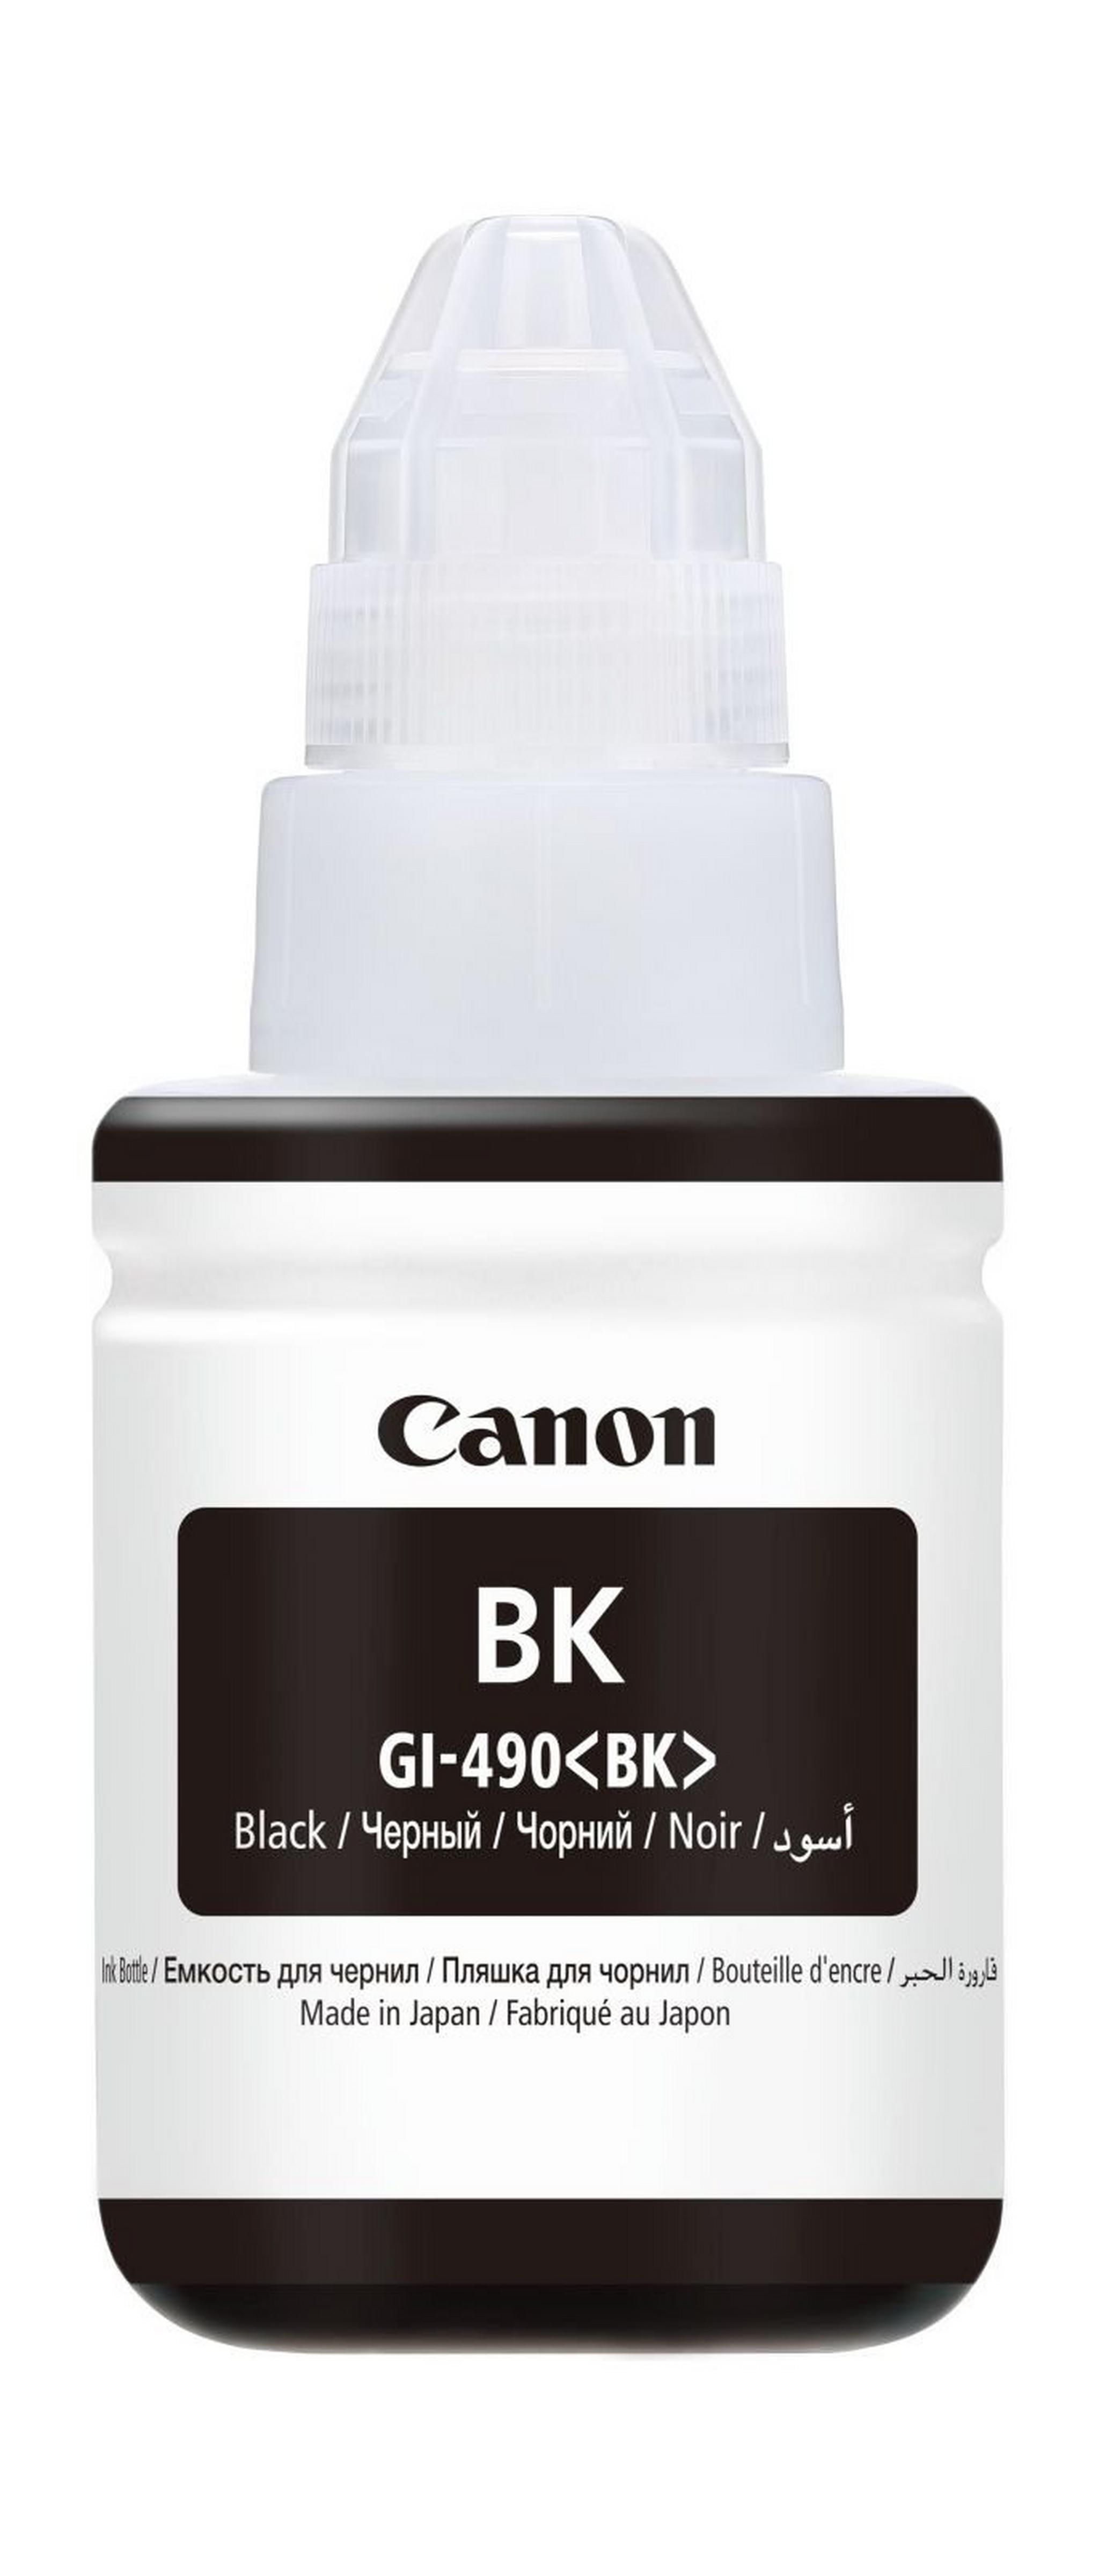 Canon GI-490 135ml Ink Bottle For Inkjet Printing (0663C001AA)- Black